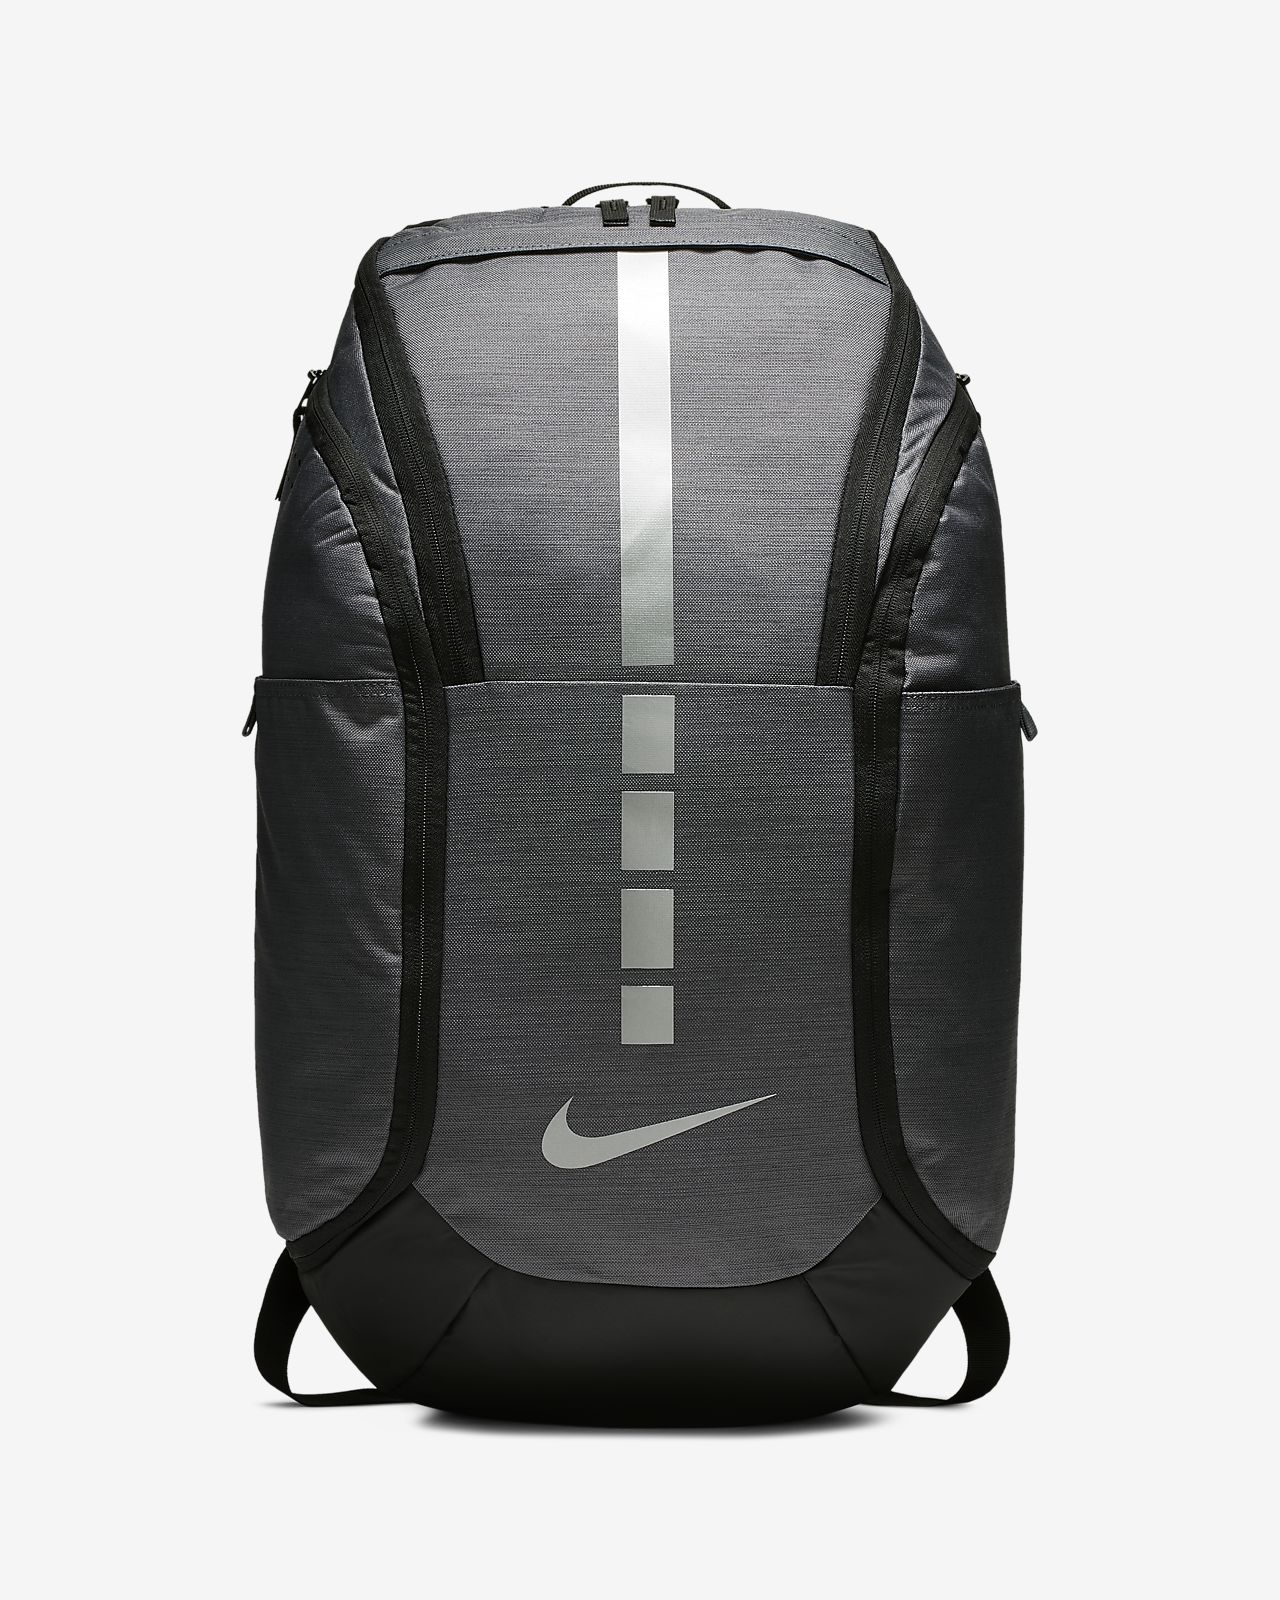 nike elite soccer backpack Sale,up to 